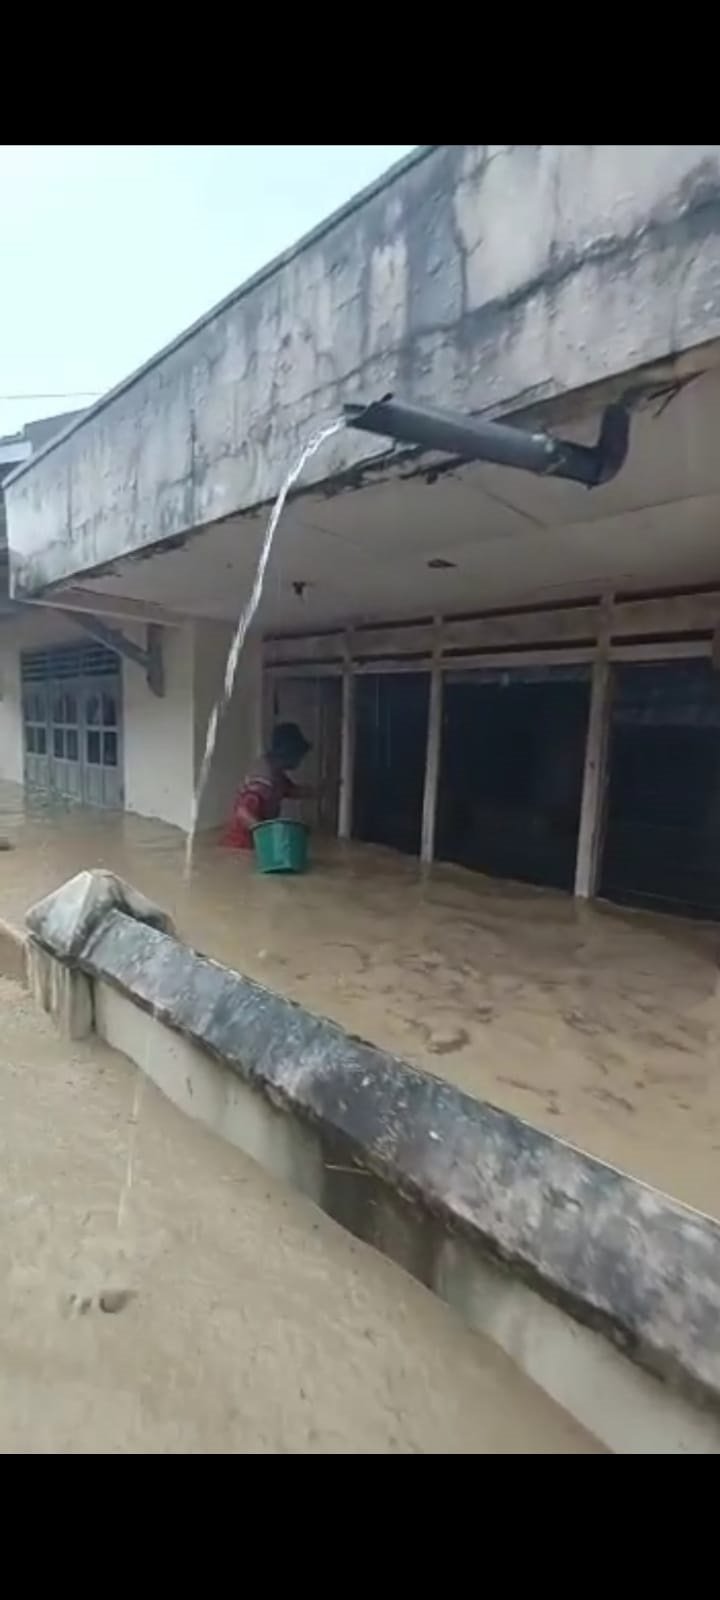 BANJIR - Rumah penduduk di Desa Capar Kecamatan Jatinegara Kabupaten Tegal tampak banjir, Jumat (4/2) sore.